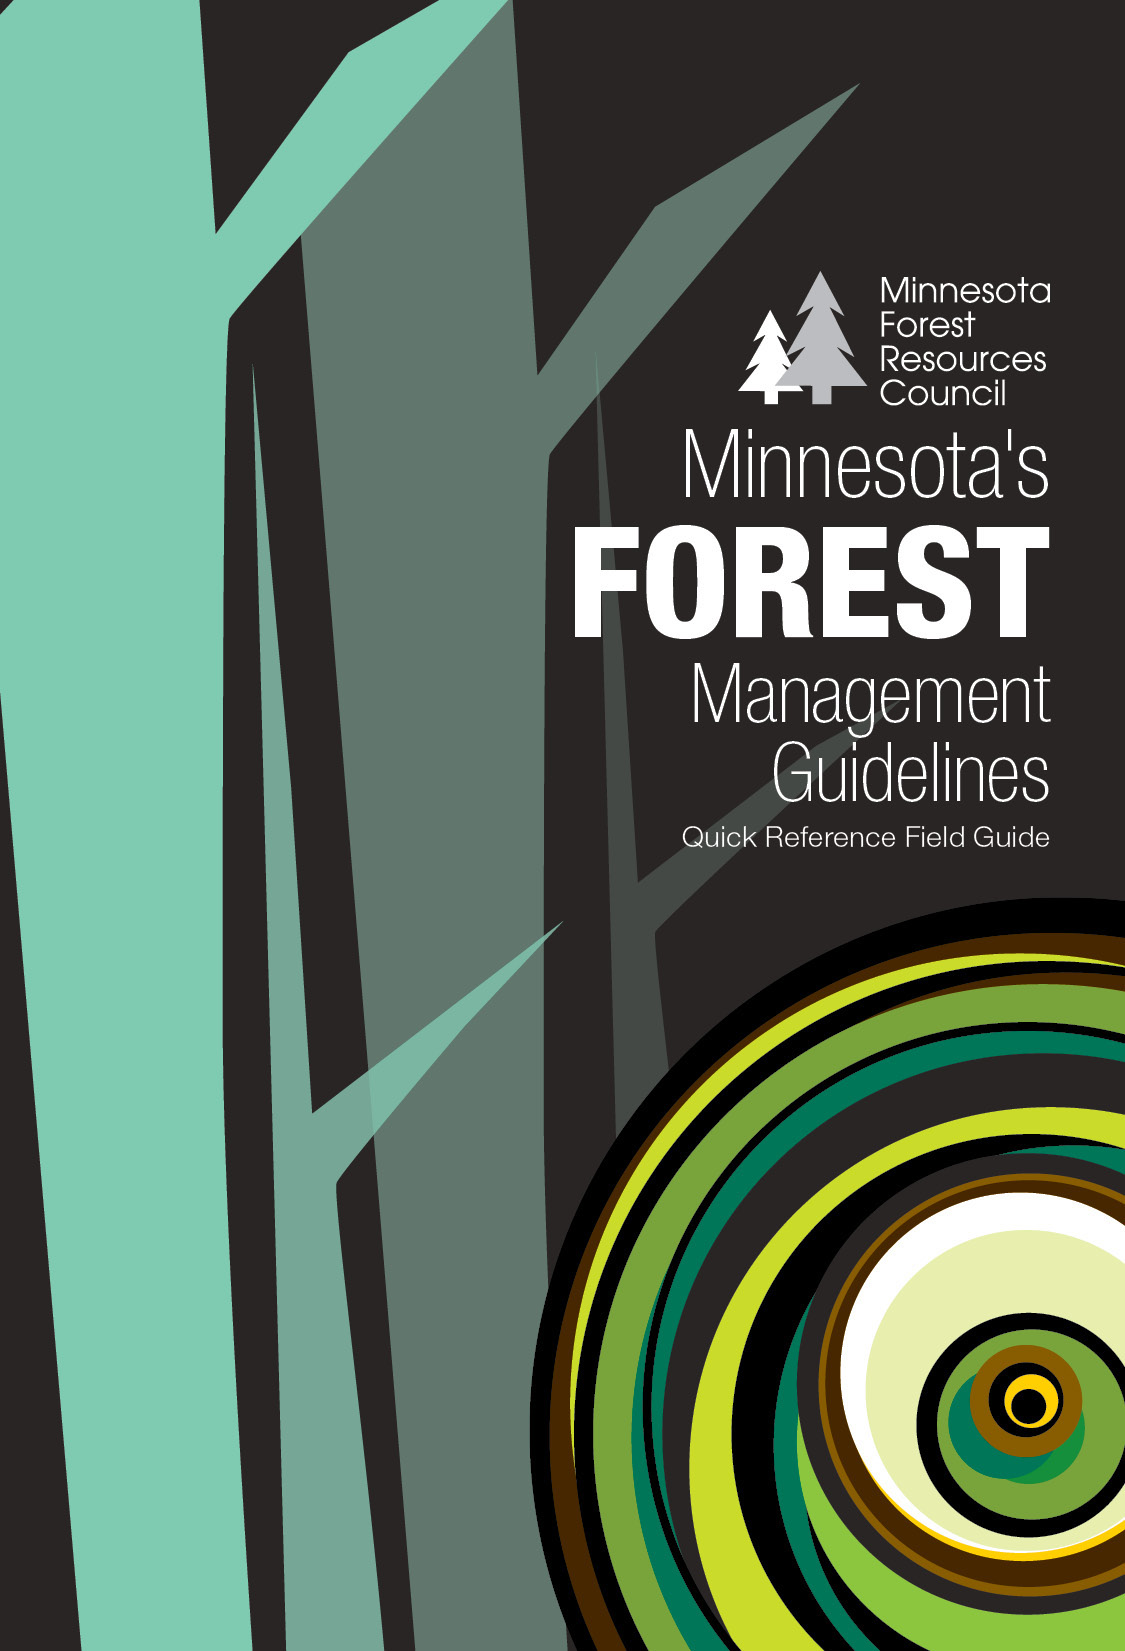 pocket guide minnesota forest design guidelines